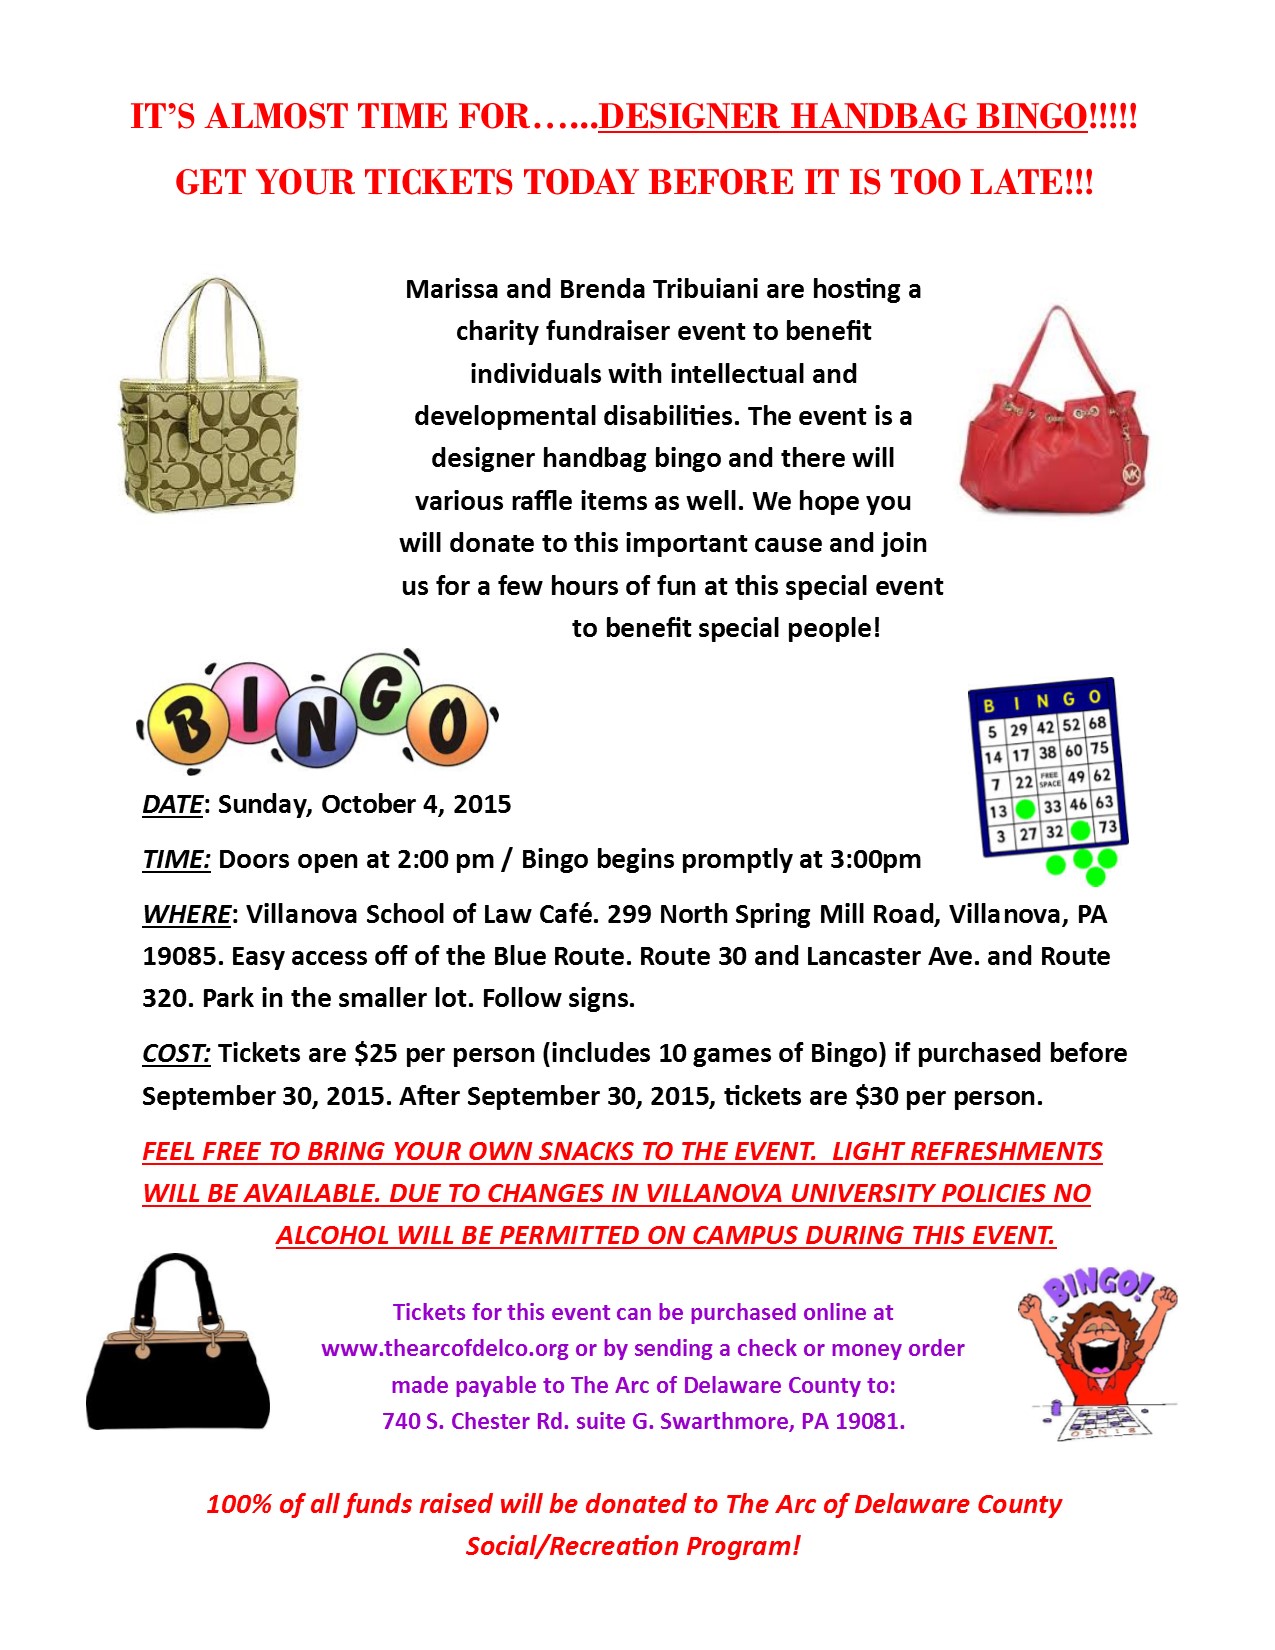 updated handbag bingo flyer